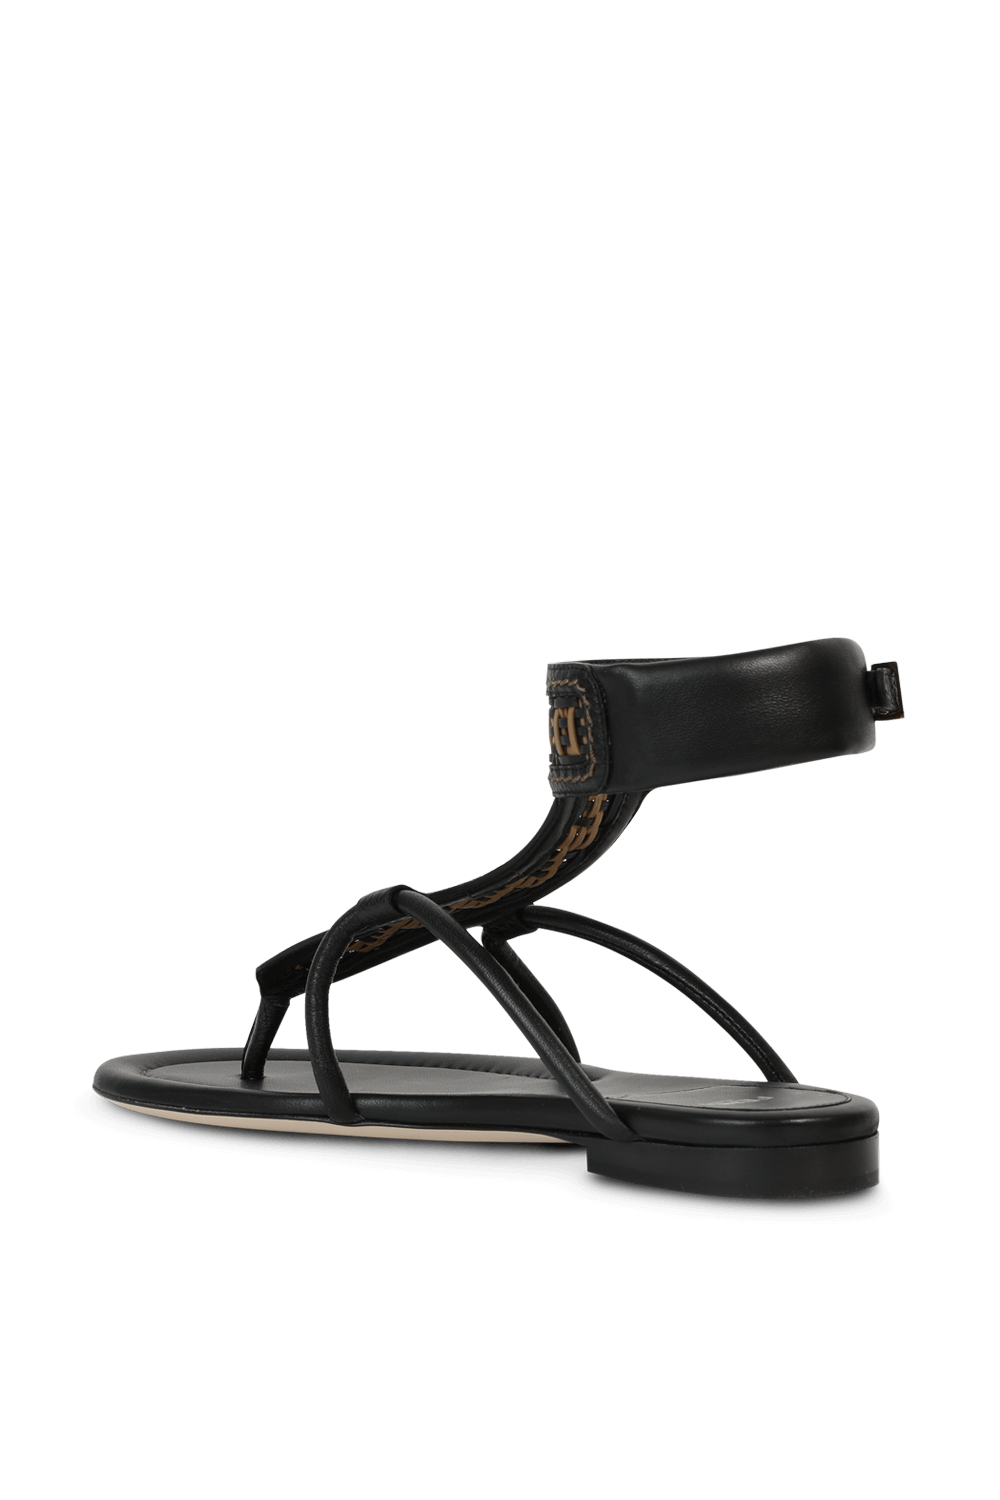 FF Woven Strap Sandals in Black FENDI